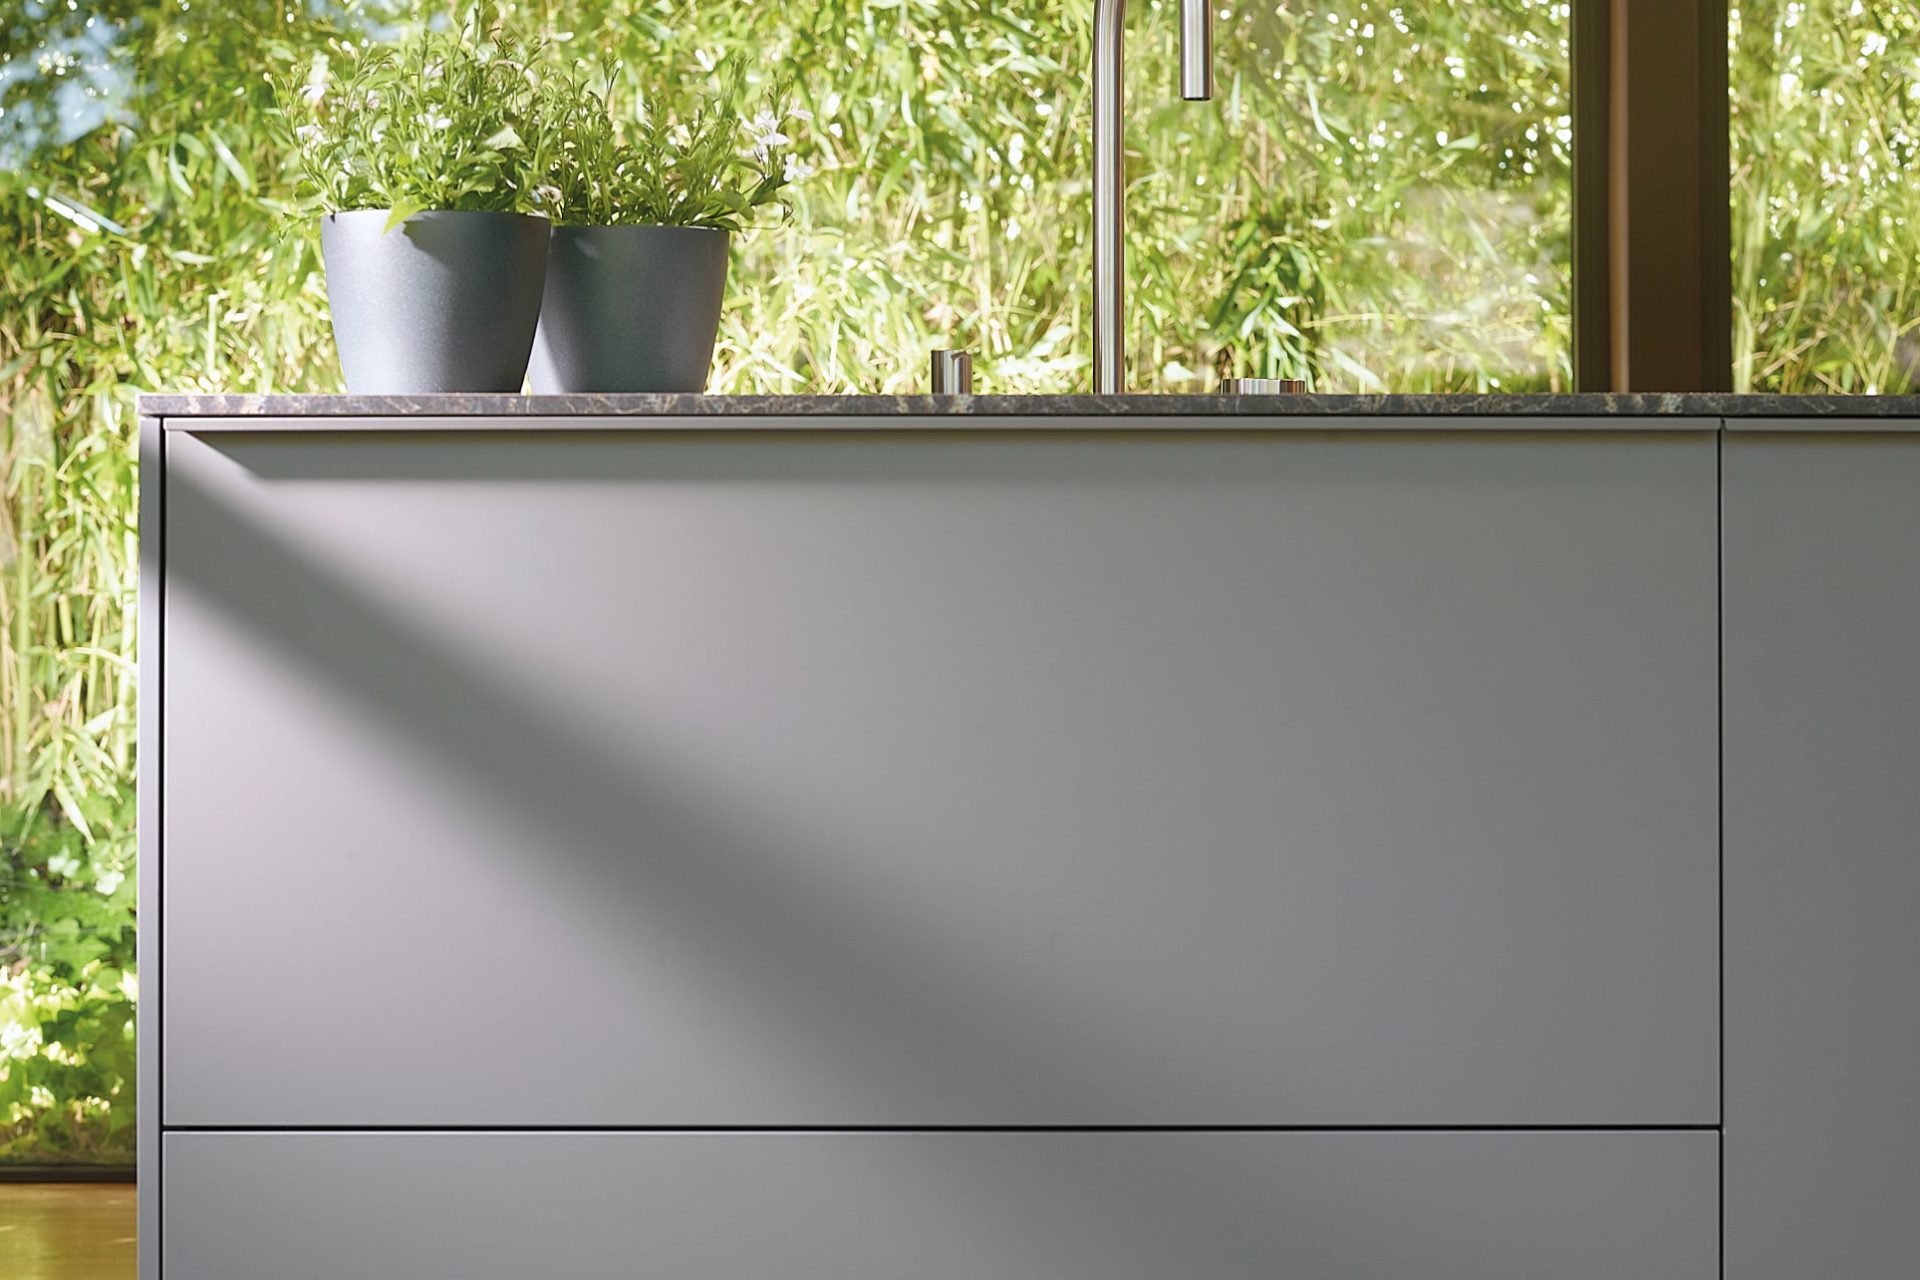 Mueble de cocina laminado Gris Vison Seda con sistema de tirador lineal integrado en el frente